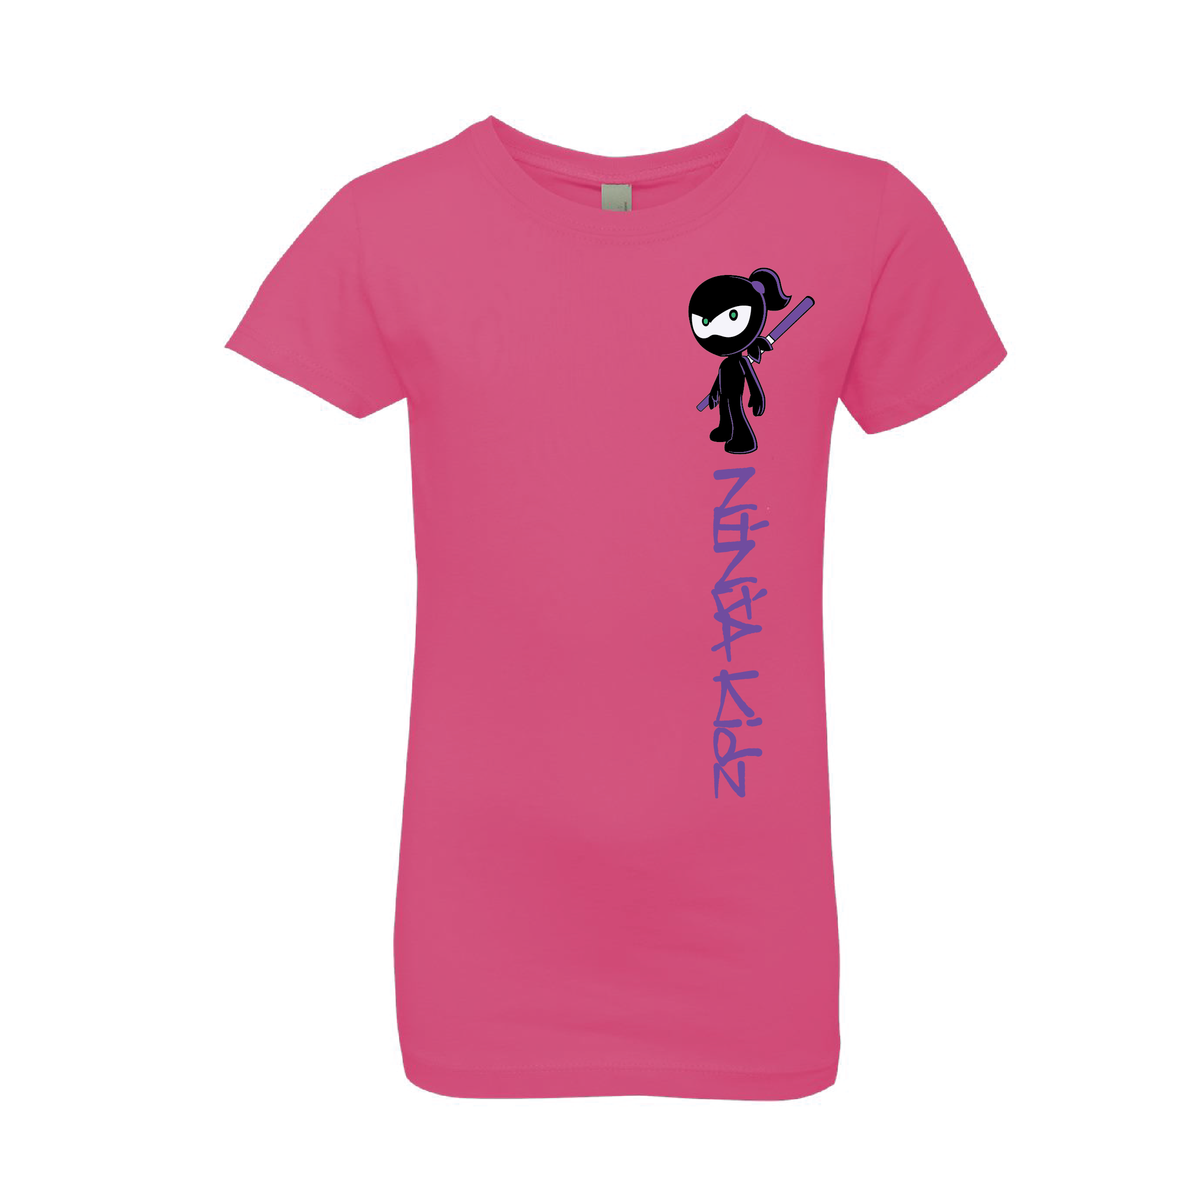 Ninja Girl Kids Light T-Shirt